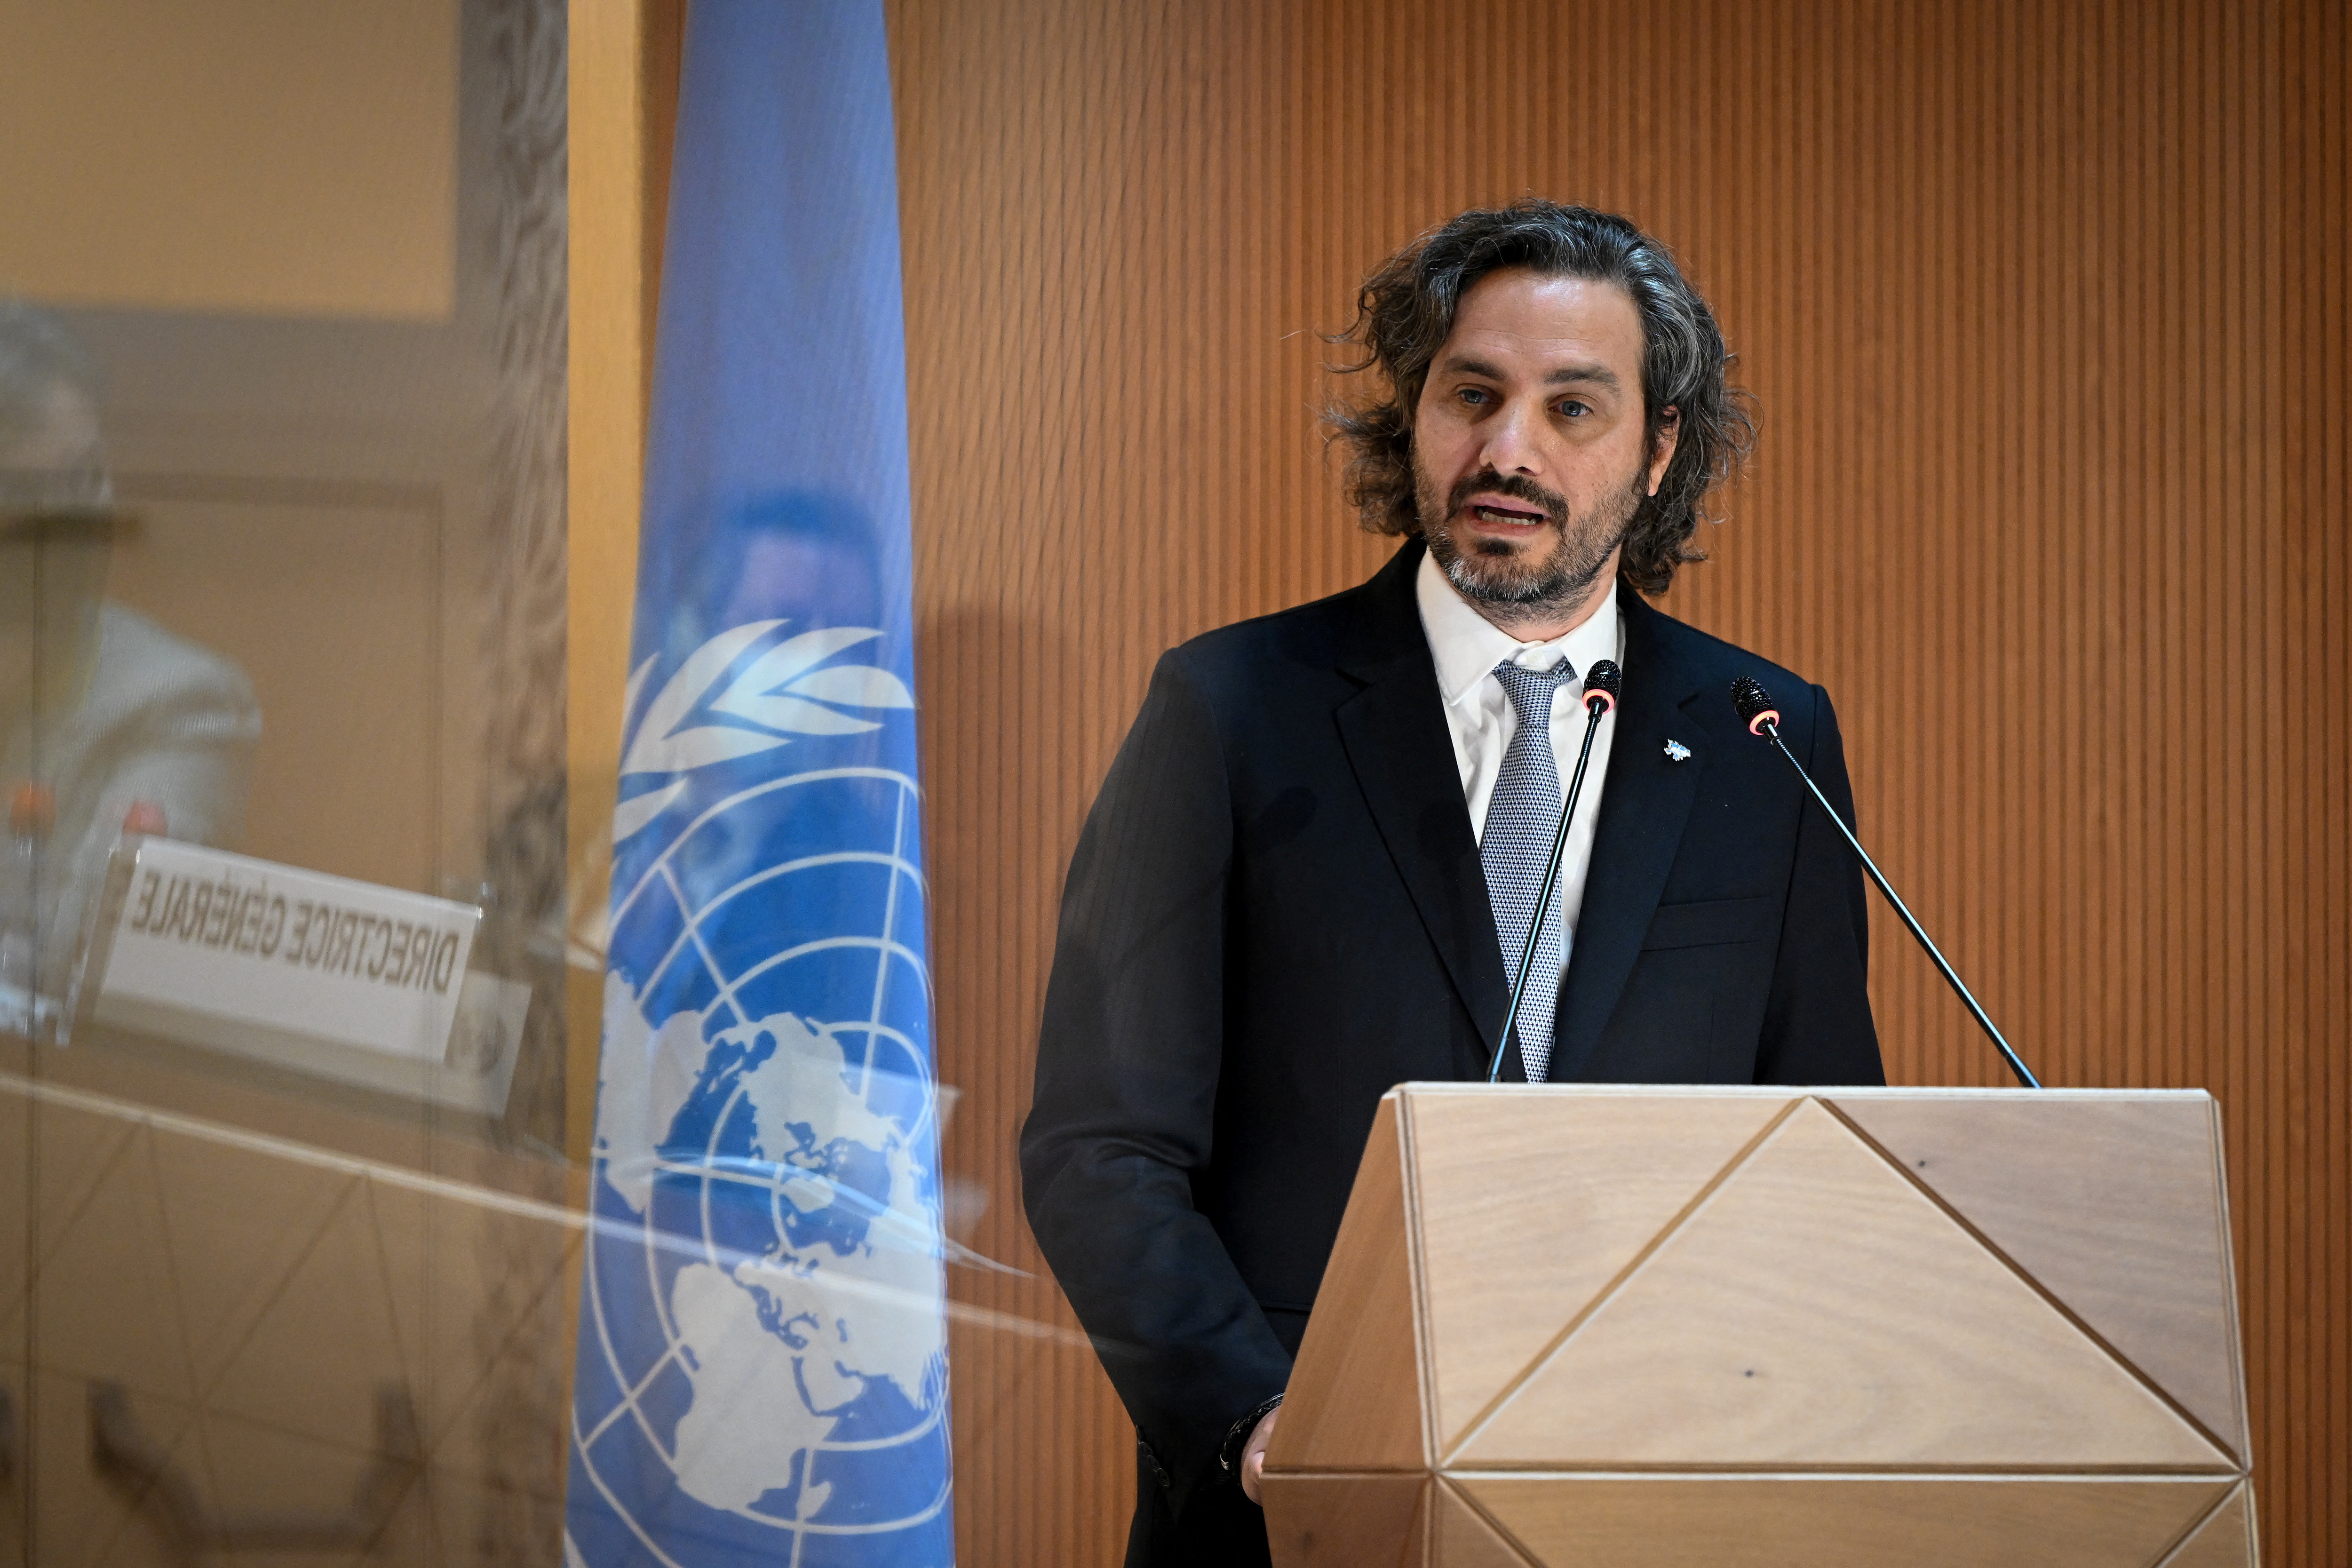 Santiago Cafiero durante su participación en la ONU (Fabrice Coffrini/Pool via REUTERS)